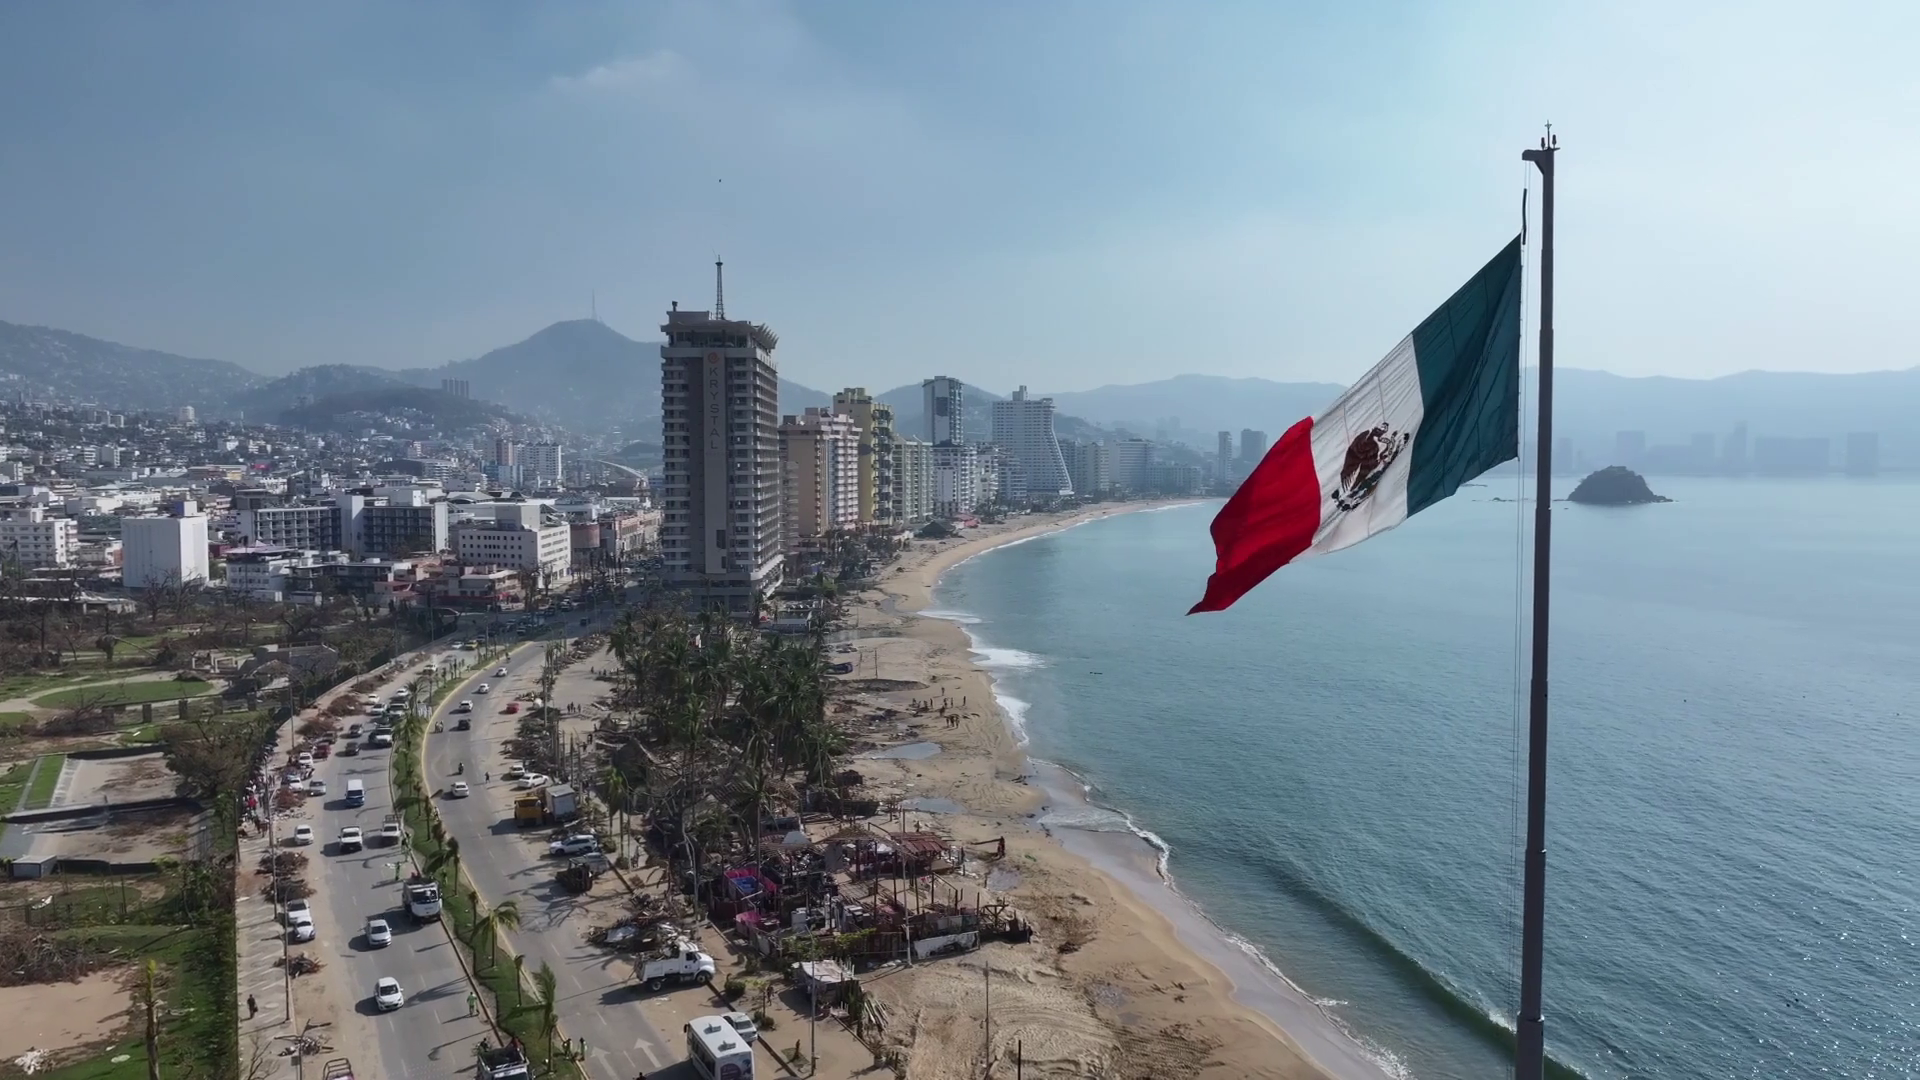 Llevando esperanza a Acapulco